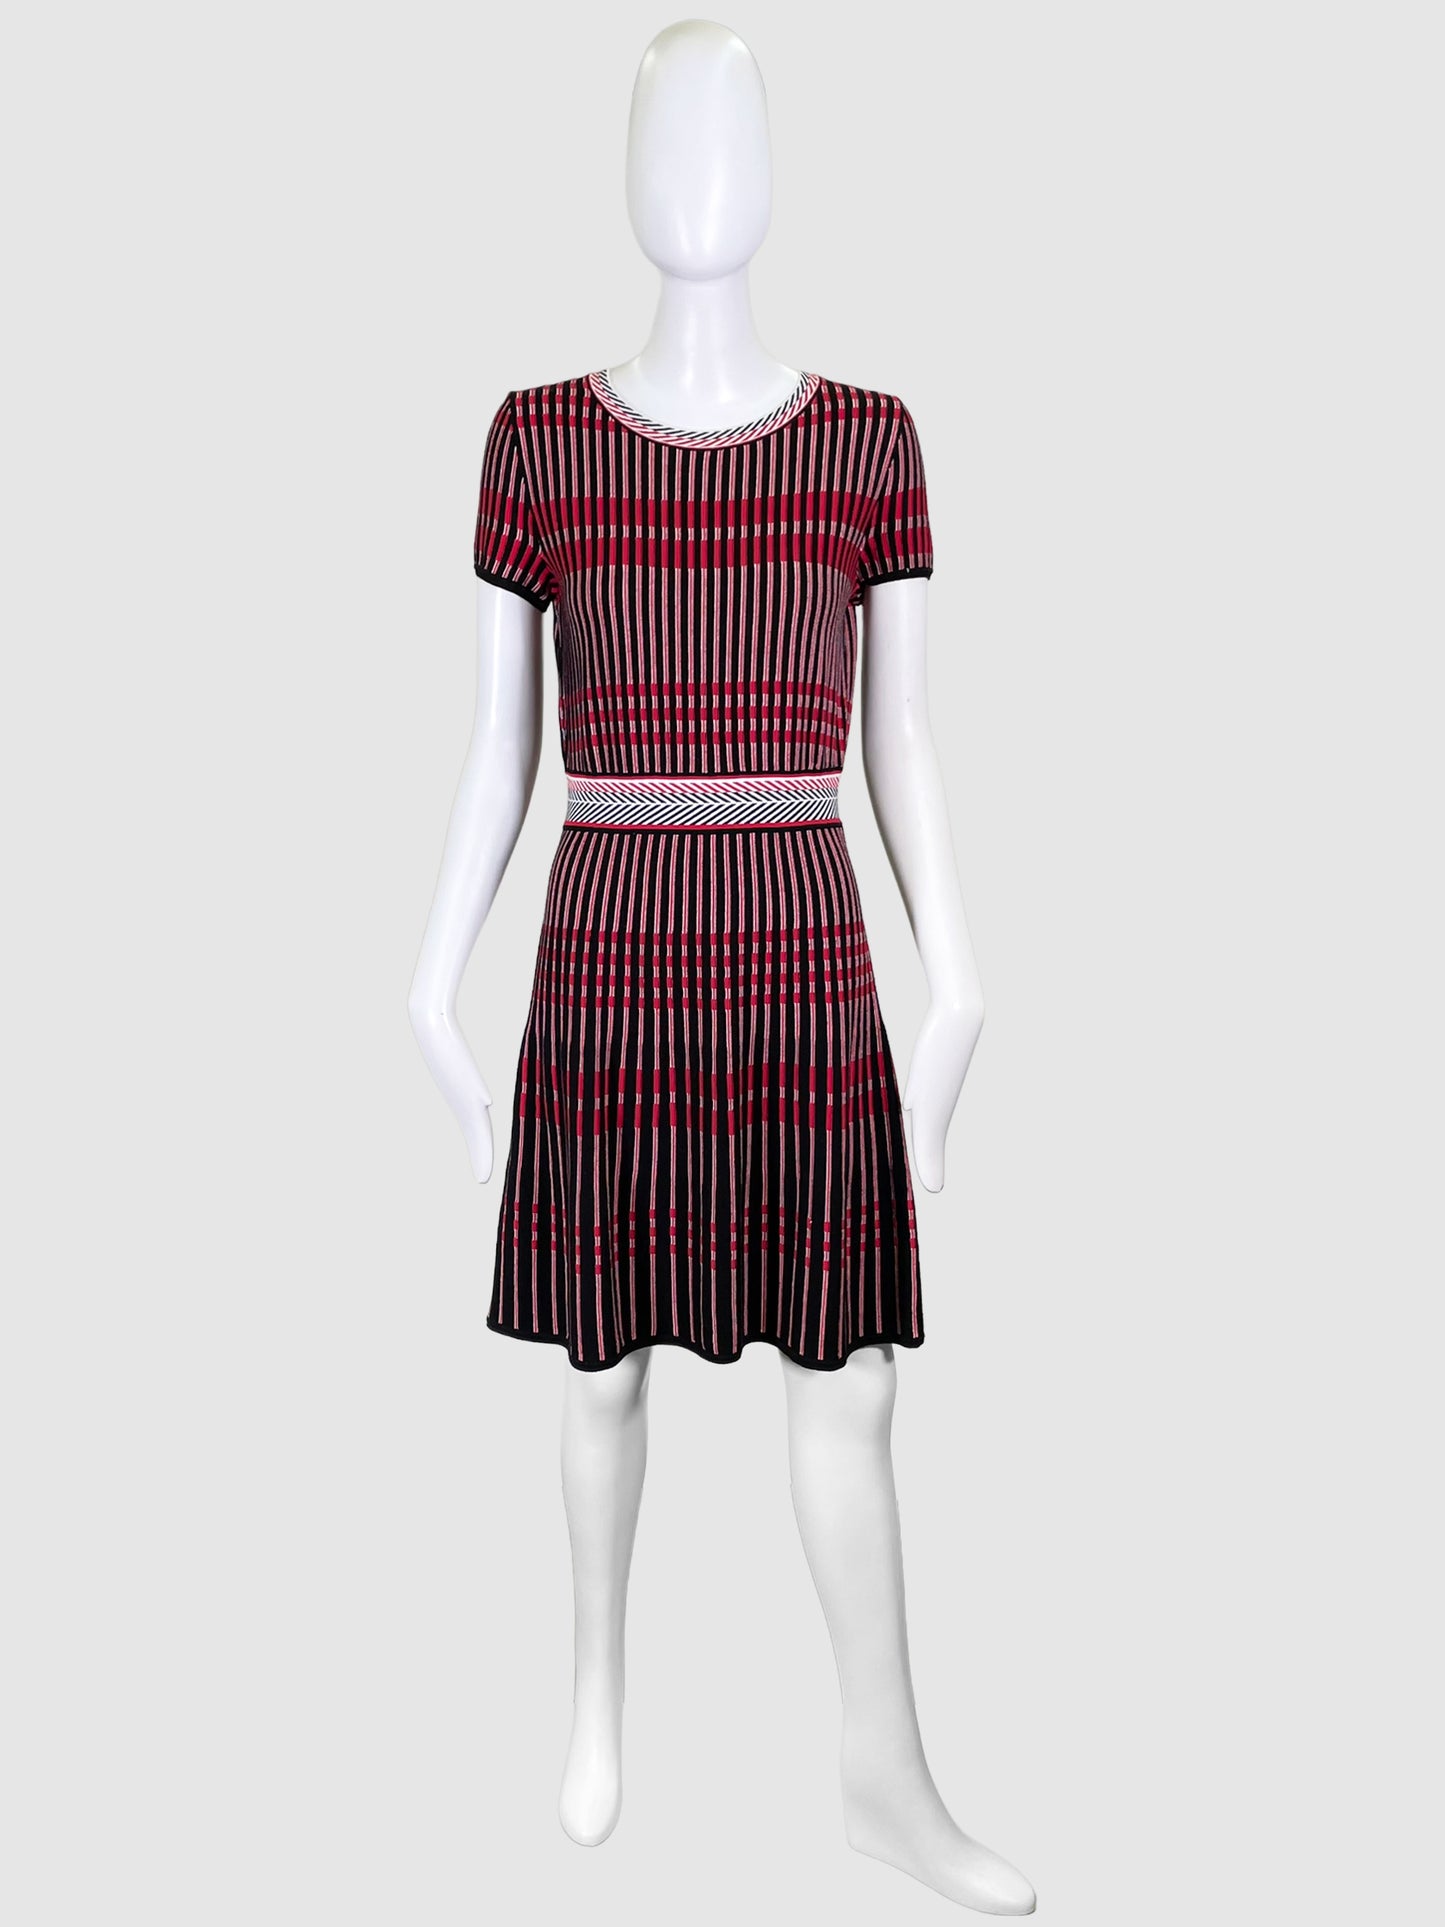 Hugo Boss Red Stripes Knit Dress - Size S